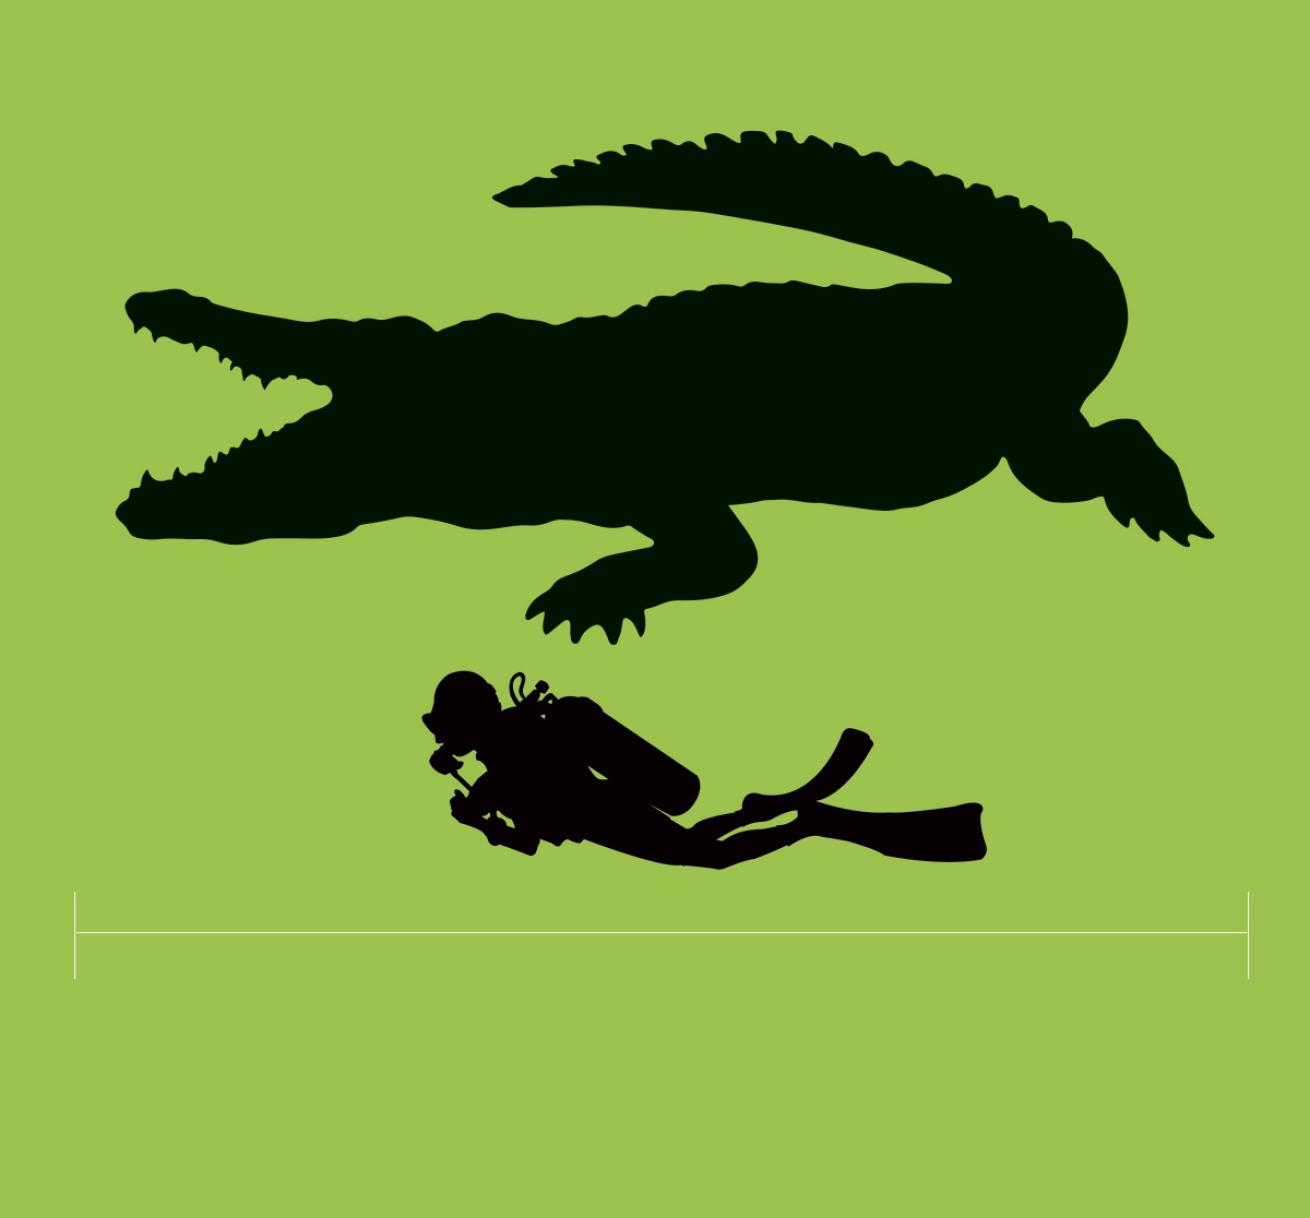 Crocodile size compared with a person